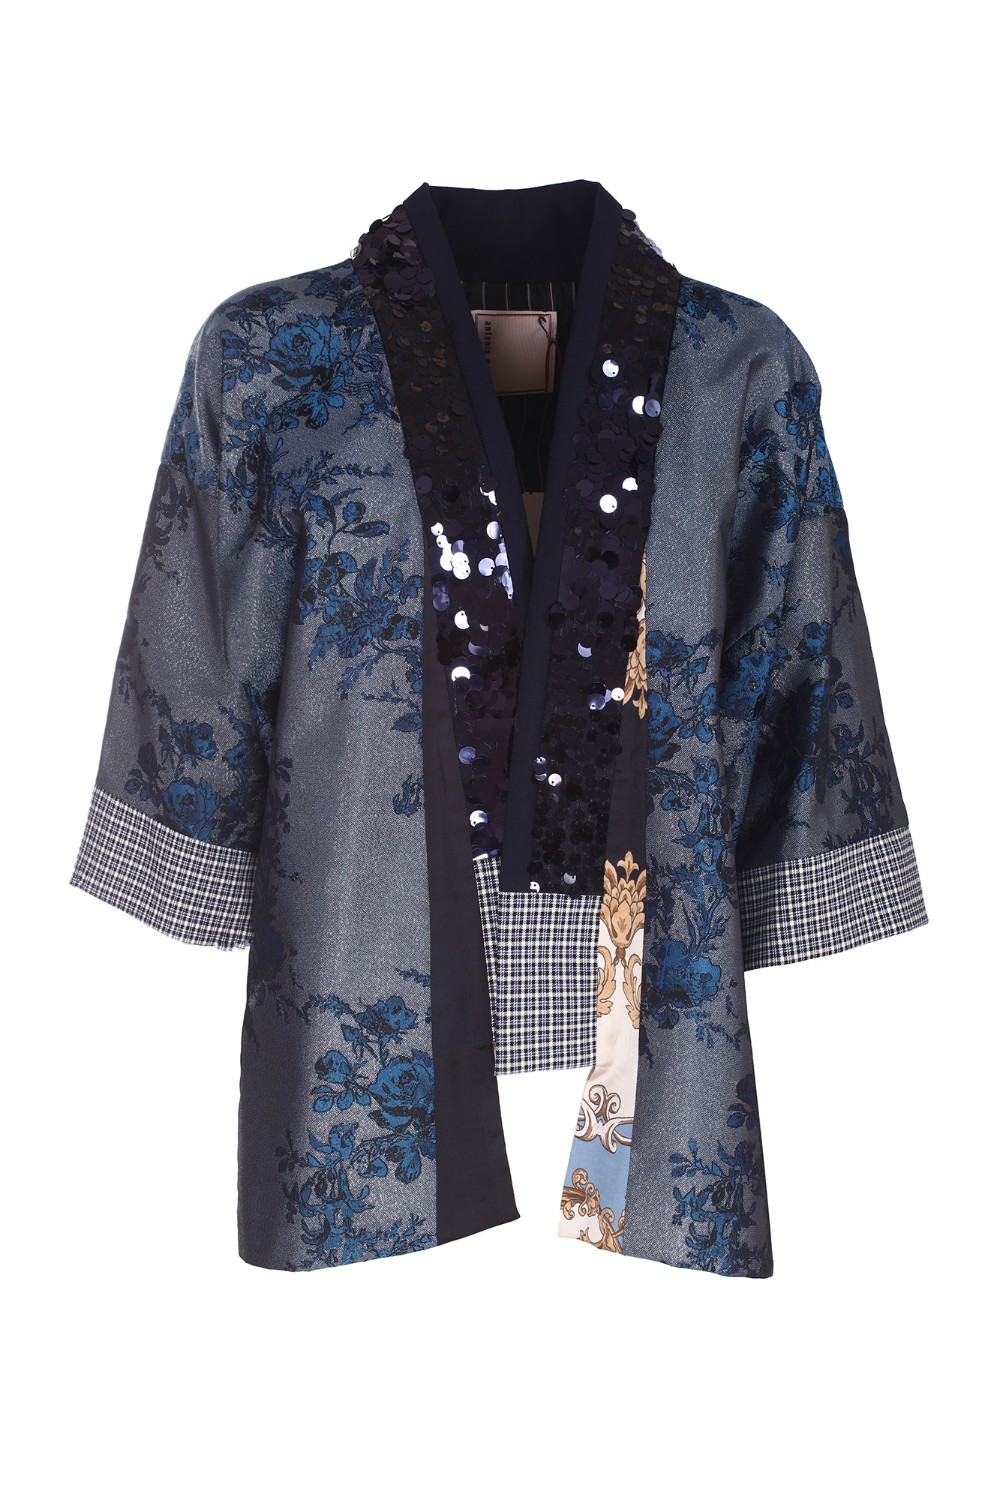 shop ANTONIO MARRAS Saldi Kimono: Antonio Marras kimono "Ibisco".
Presenta un'elaborata cucitura di un motivo forale ed è rifinito con luccicanti paillettes blu sui risvolti. 
Vestibilità regolare.
Composizione: 55% Poliestere 27% Viscosa 11% Cotone 6% Poliammide 1% Elastan.
Fabbricato in Italia.. IBISCO LB6001 D03-329 number 6386959